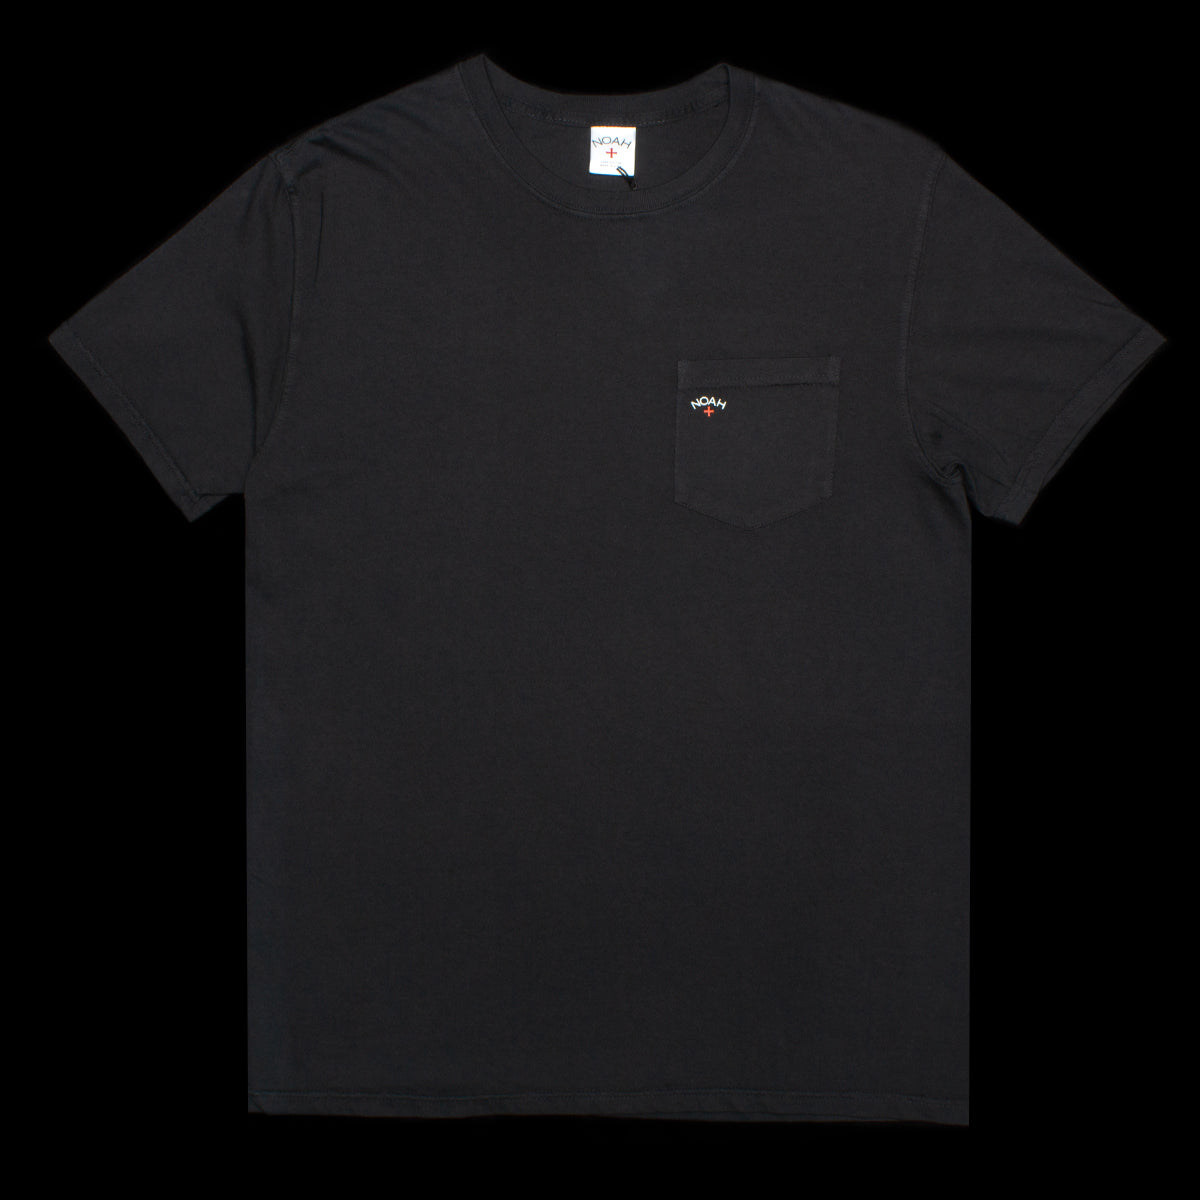 Noah | Pocket T-Shirt Color : Black